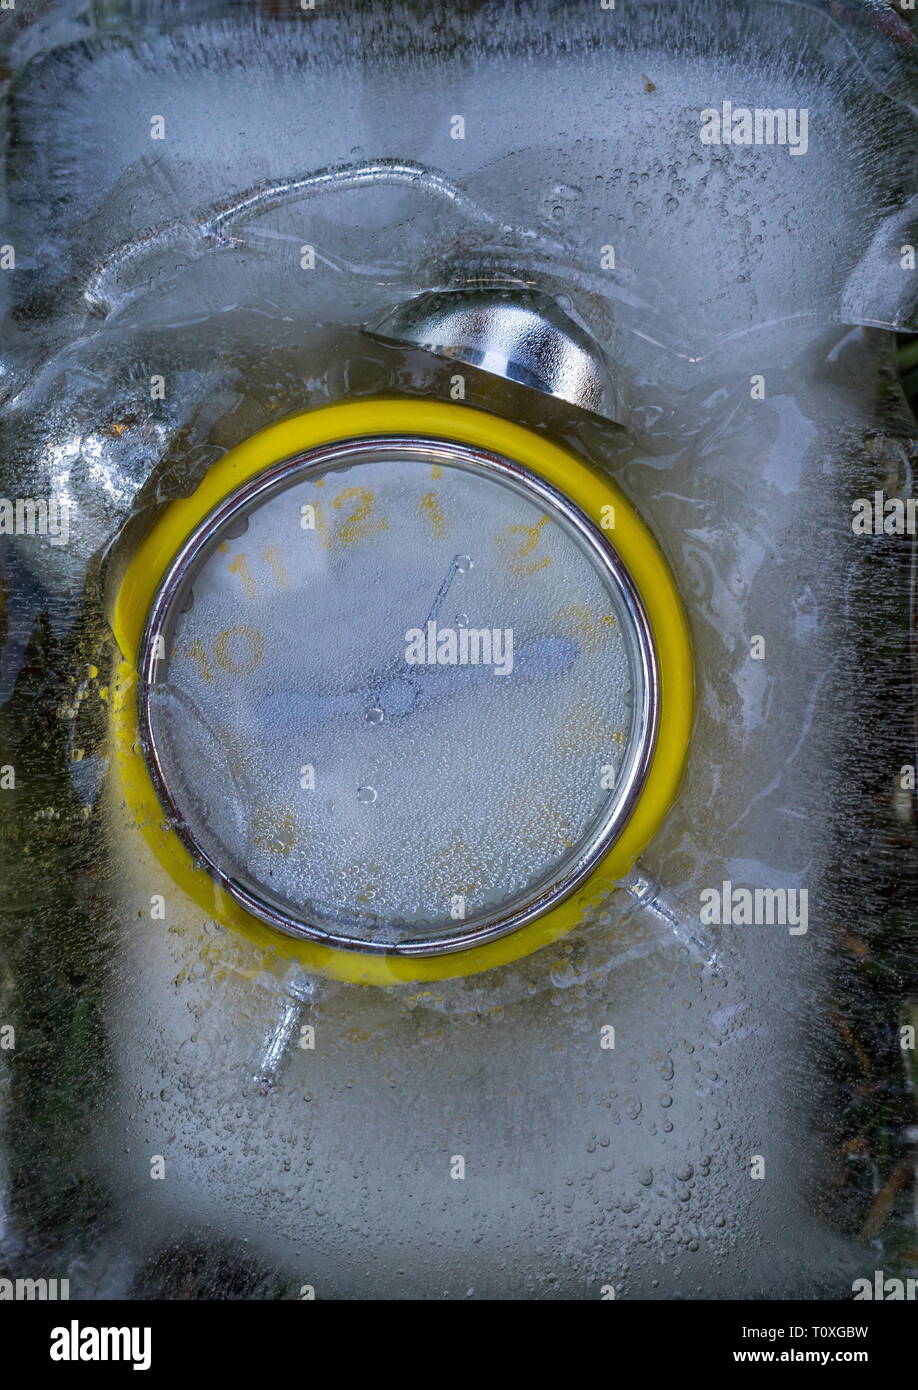 Retro gelb Wecker in einem eisblock Bild mit Kopie Raum gefroren Stockfoto